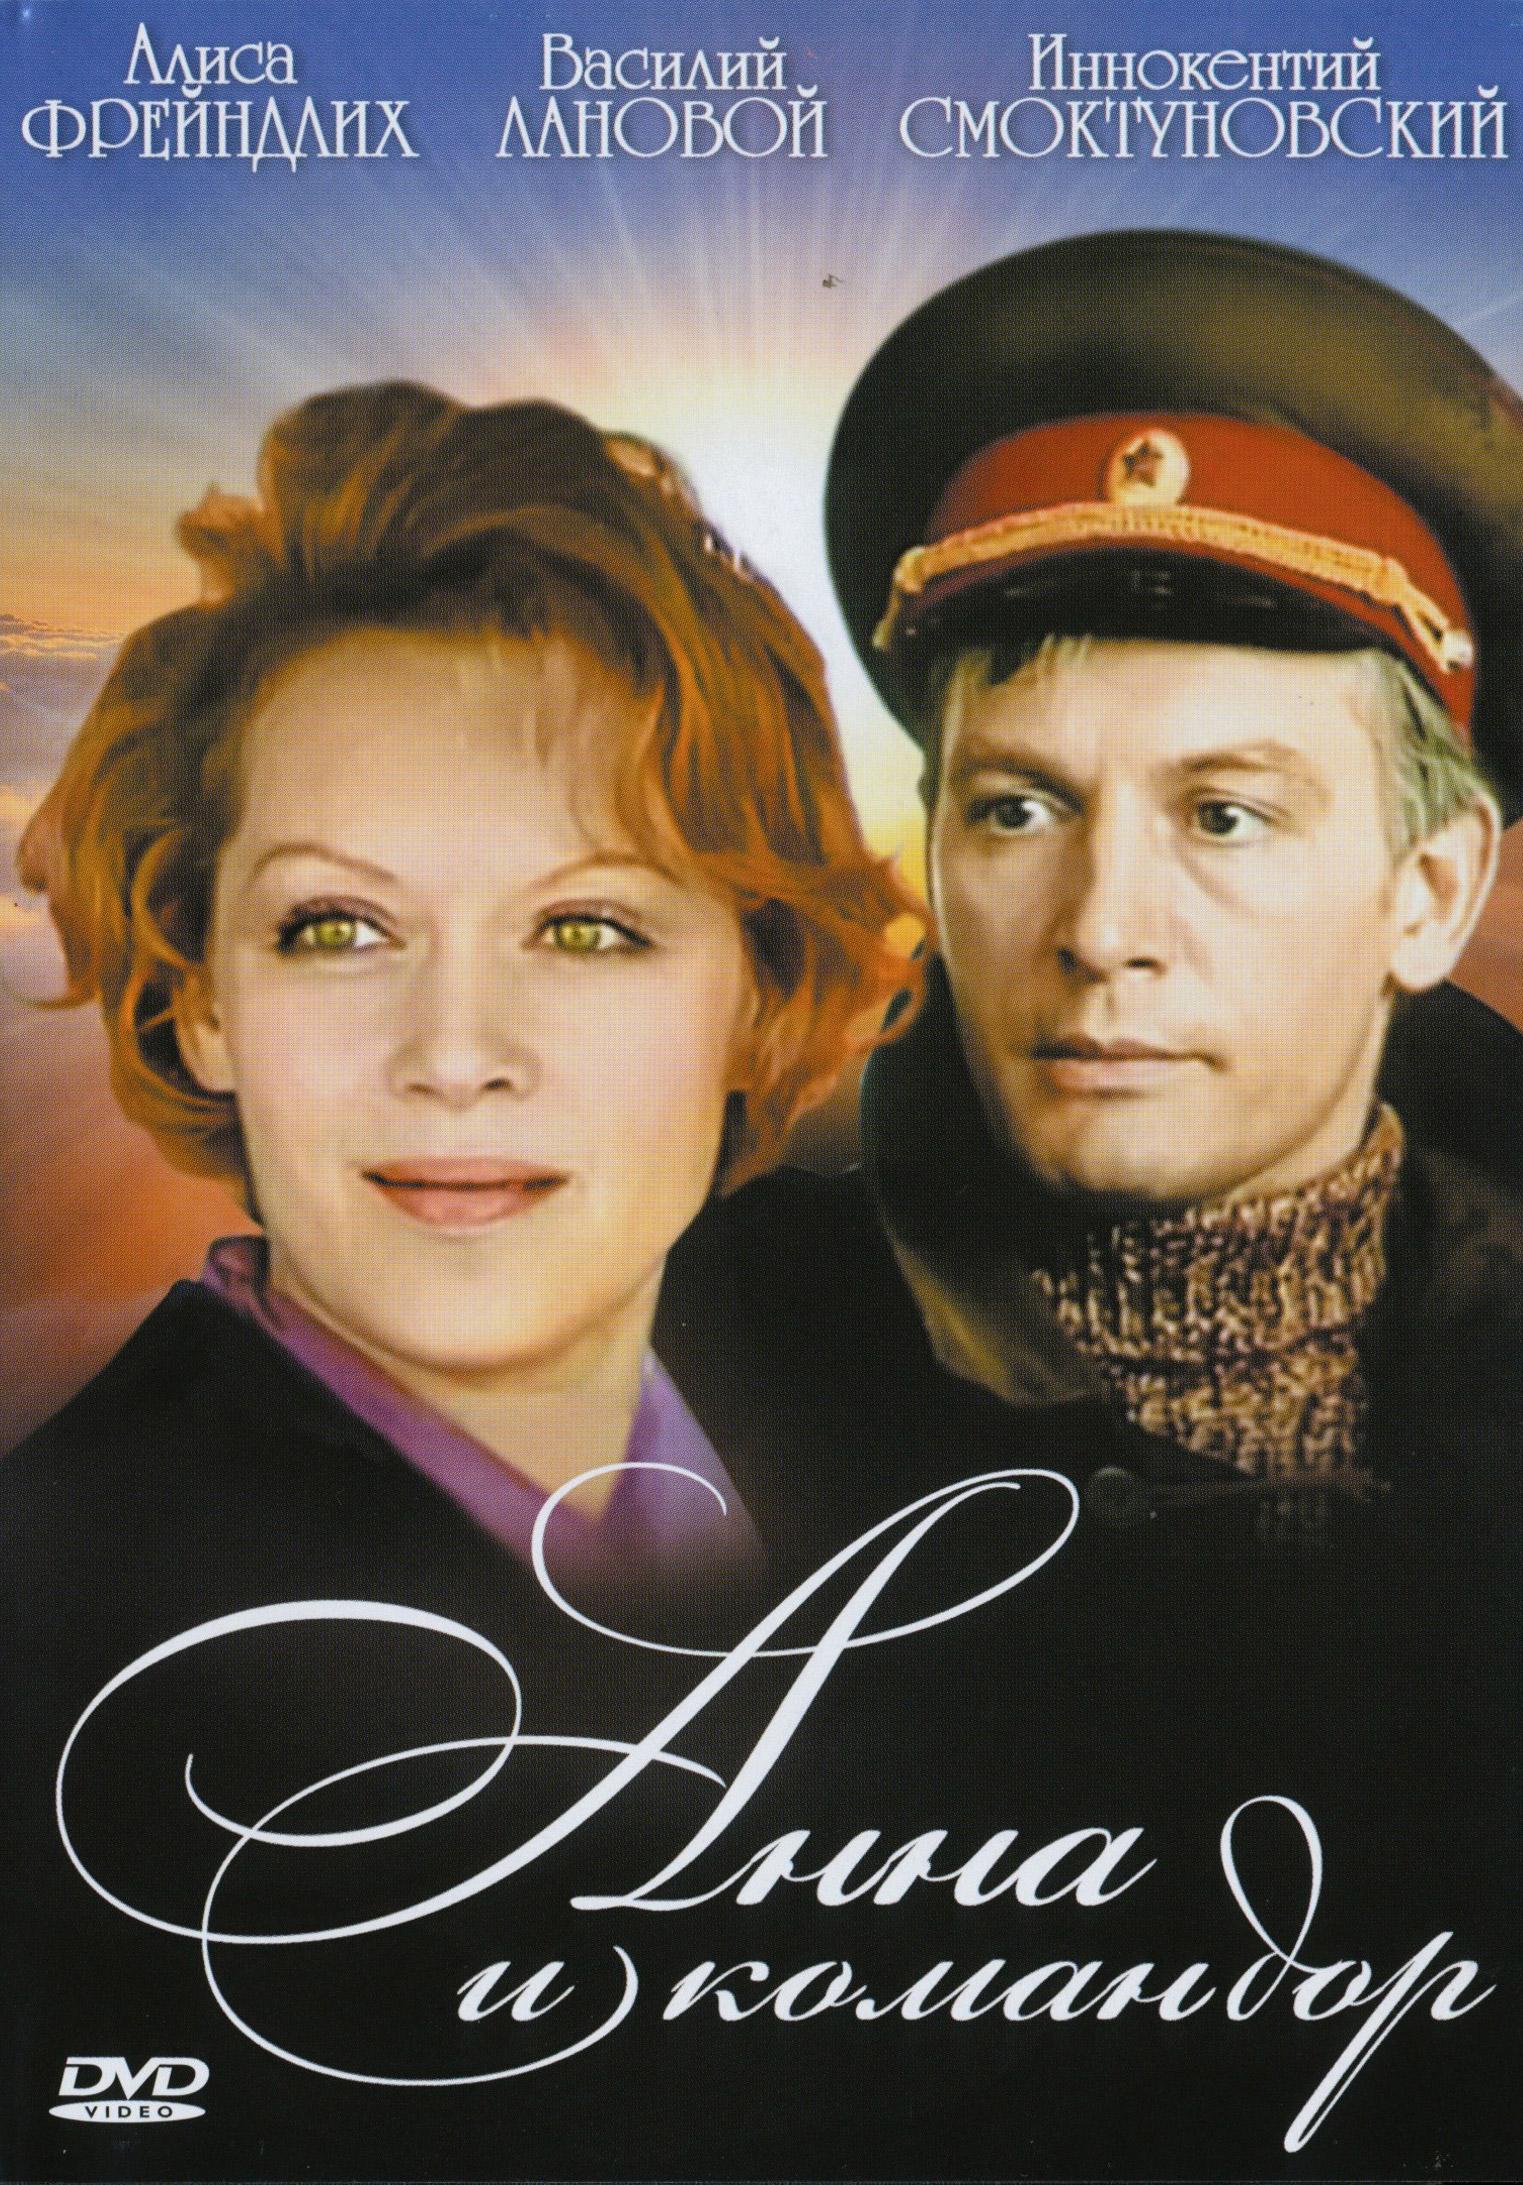 Постер фильма Анна и командор | Anna i komandor